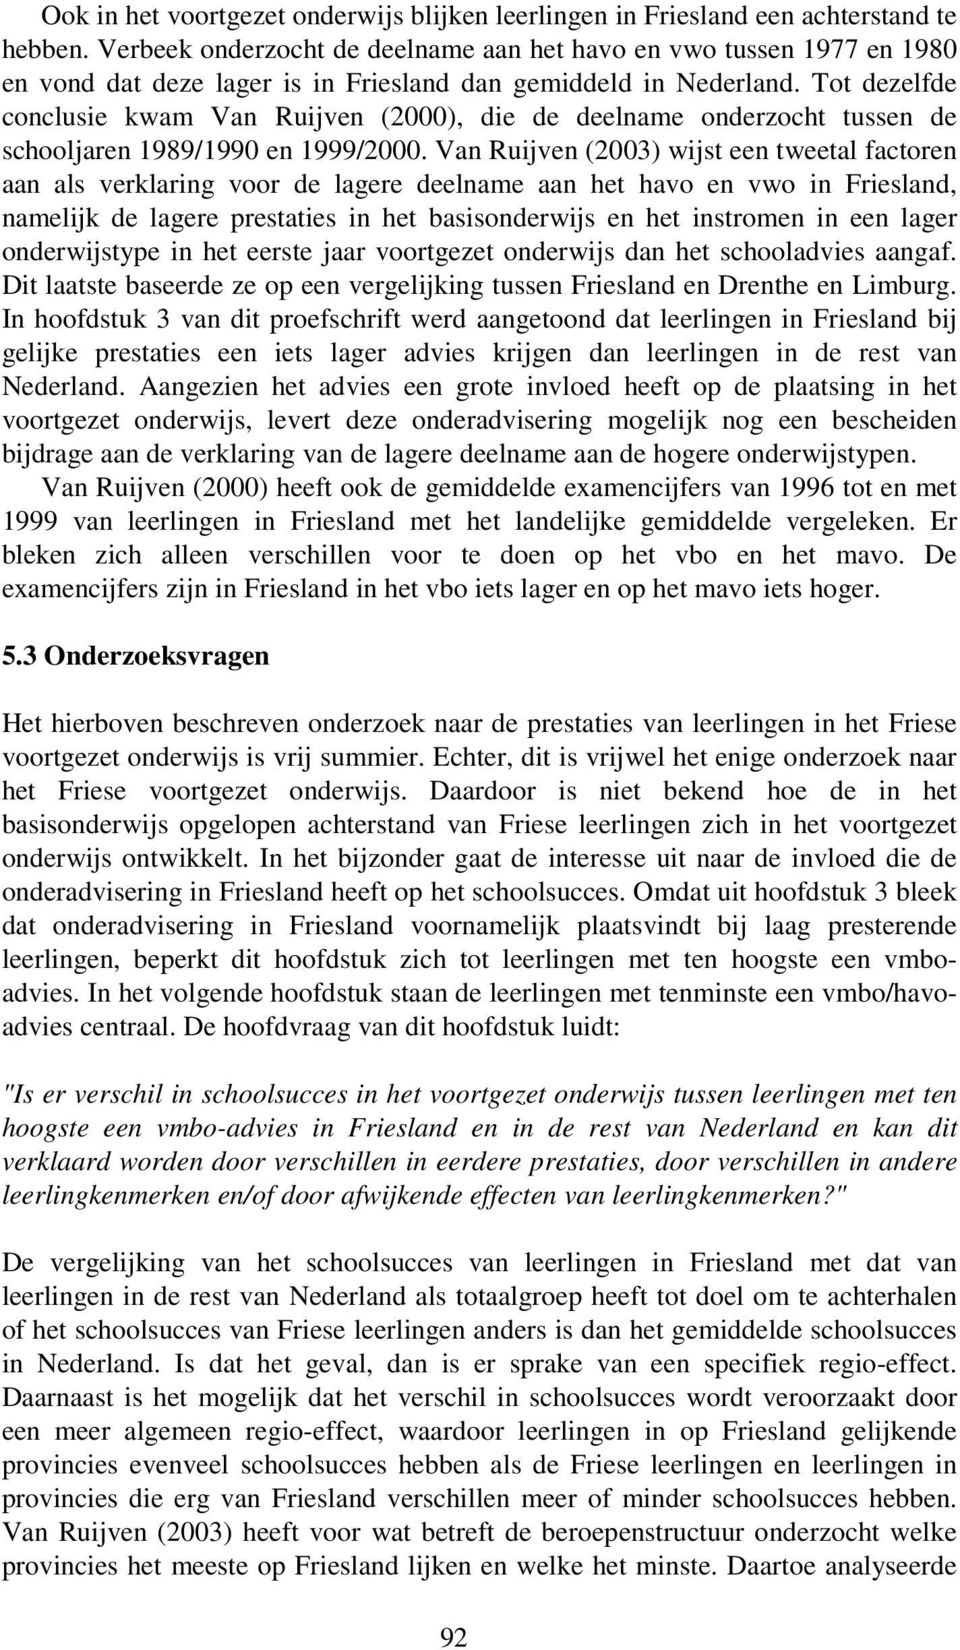 Tot dezelfde conclusie kwam Van Ruijven (2000), die de deelname onderzocht tussen de schooljaren 1989/1990 en 1999/2000.